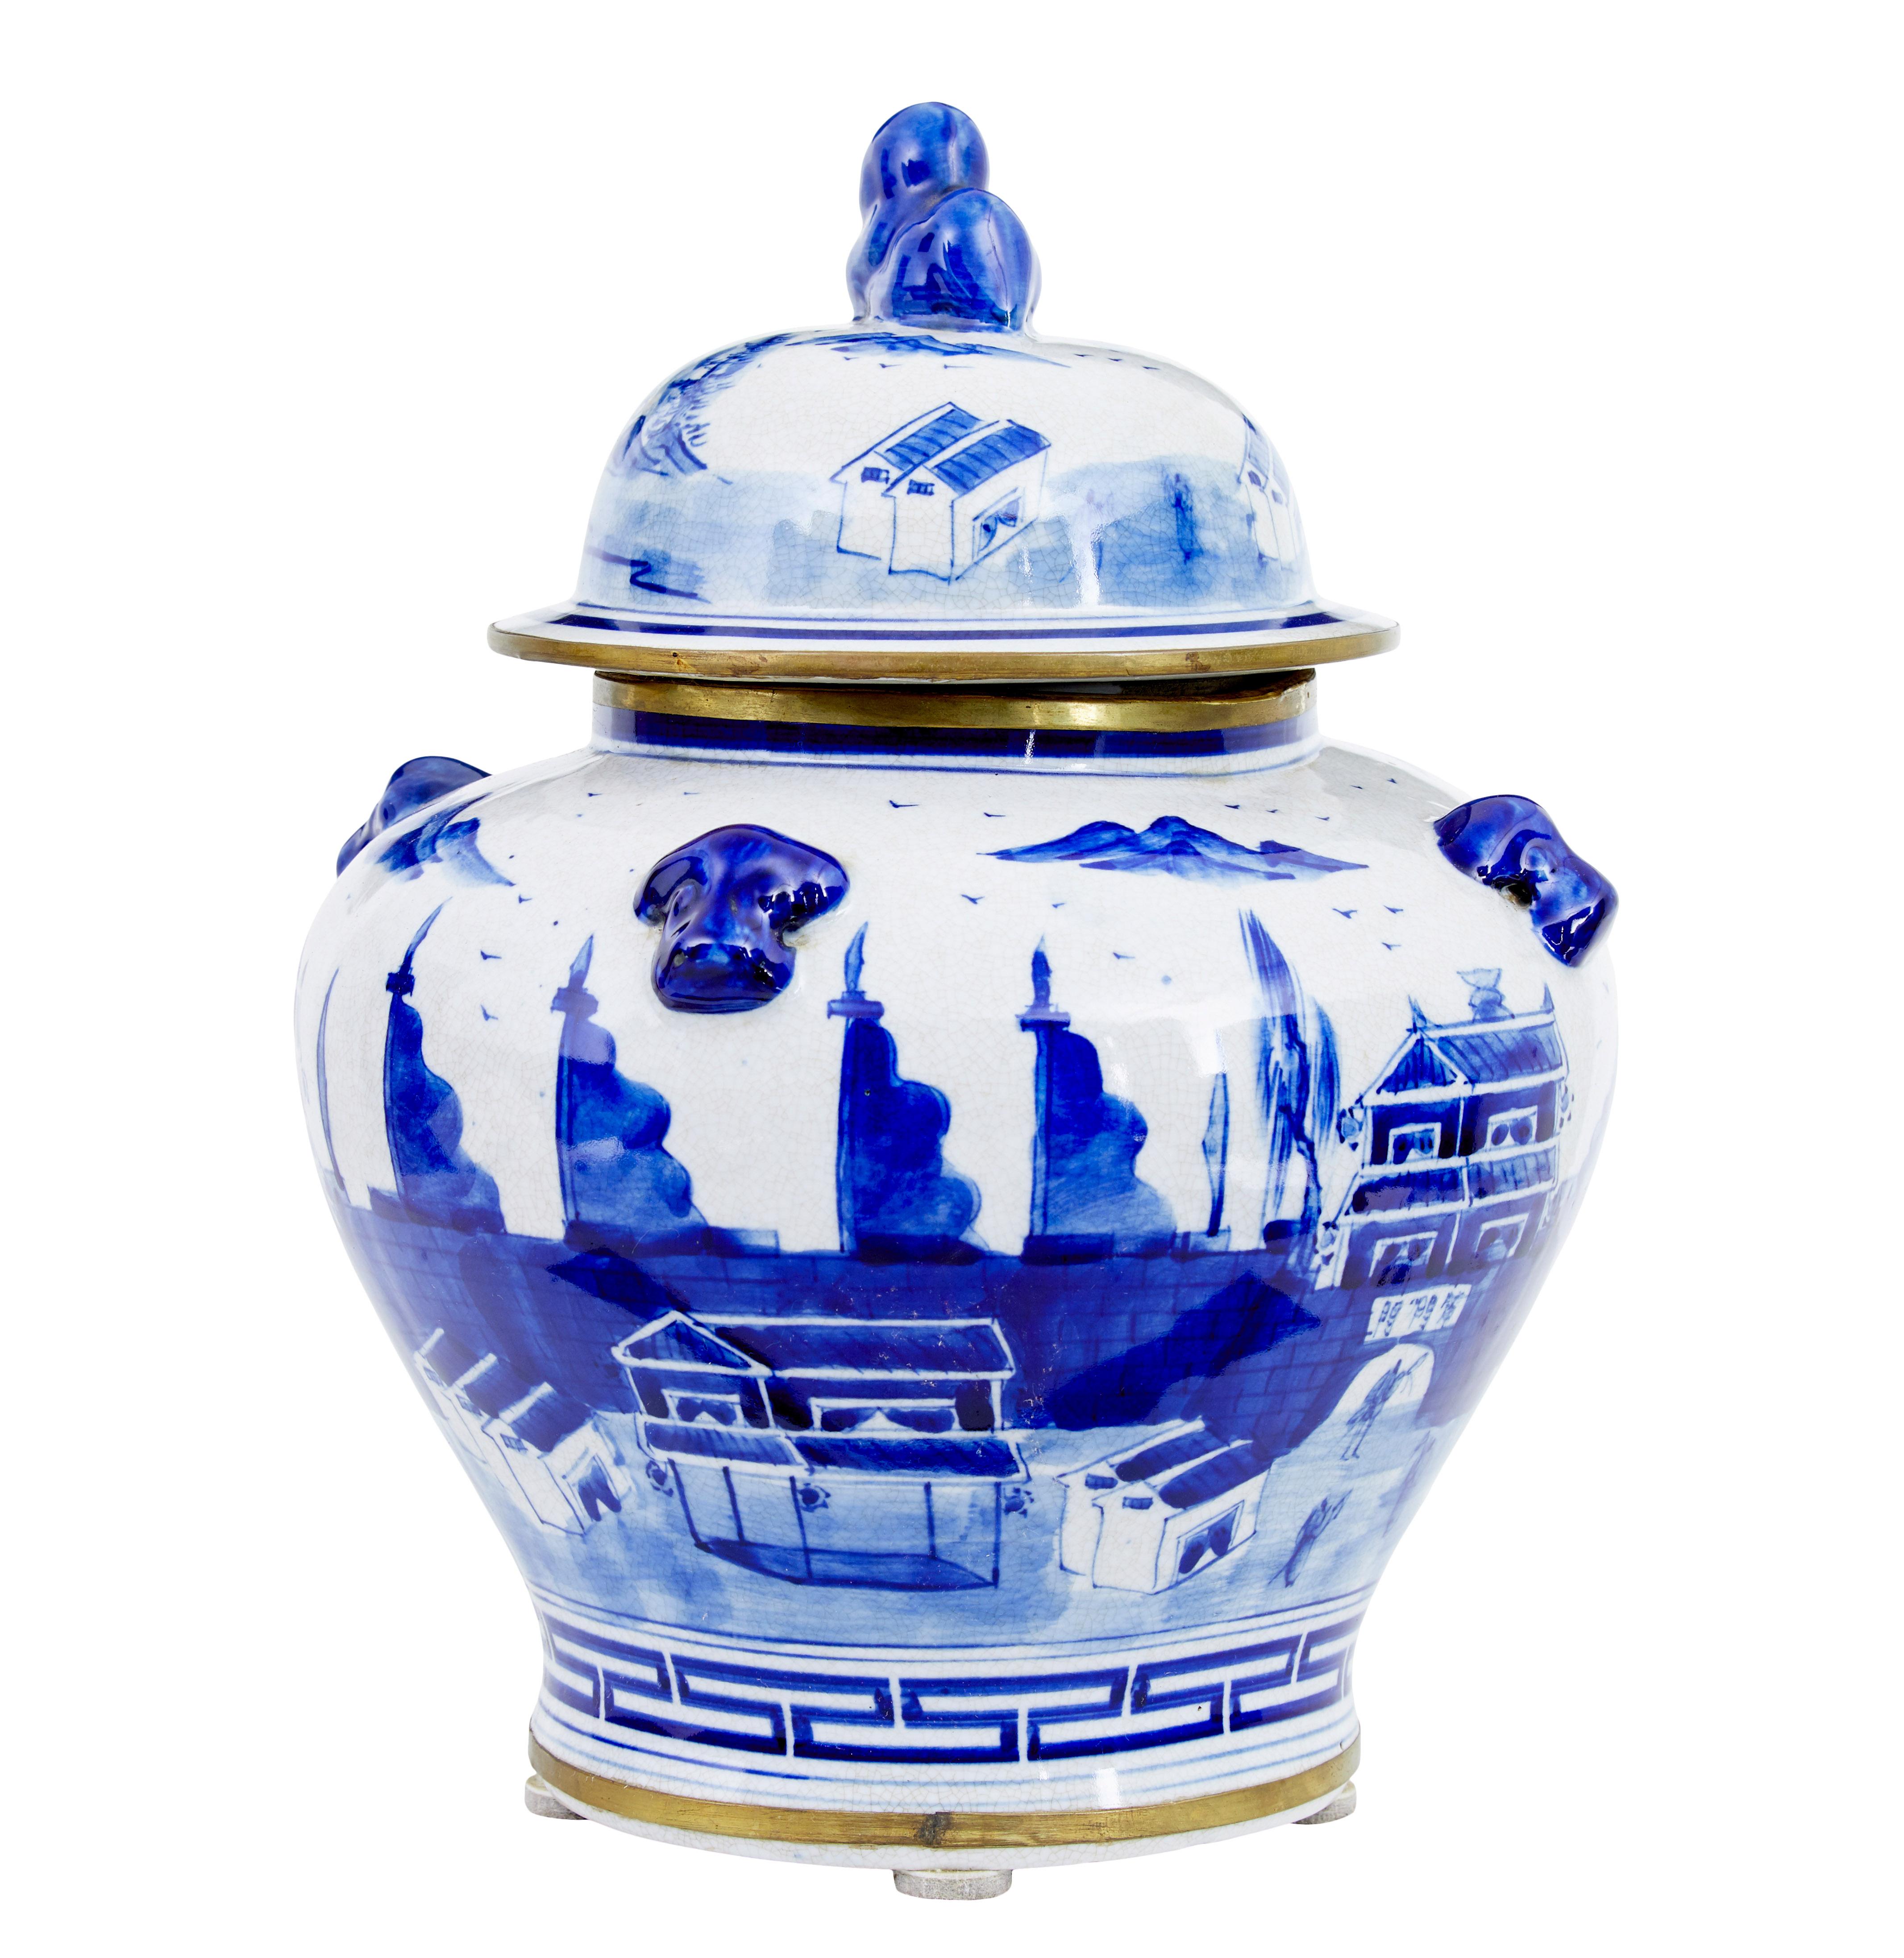 Dekoratives Ingwerglas aus Keramik, um 1960.

Kleines chinesisches Ingwergefäß von guter Qualität.  Handbemalt in Blau auf weißem Grund, zusätzlich mit Goldrand und Bodenkante verziert.

Guter Zustand.  Der Rand des Glases ist schief, aber der